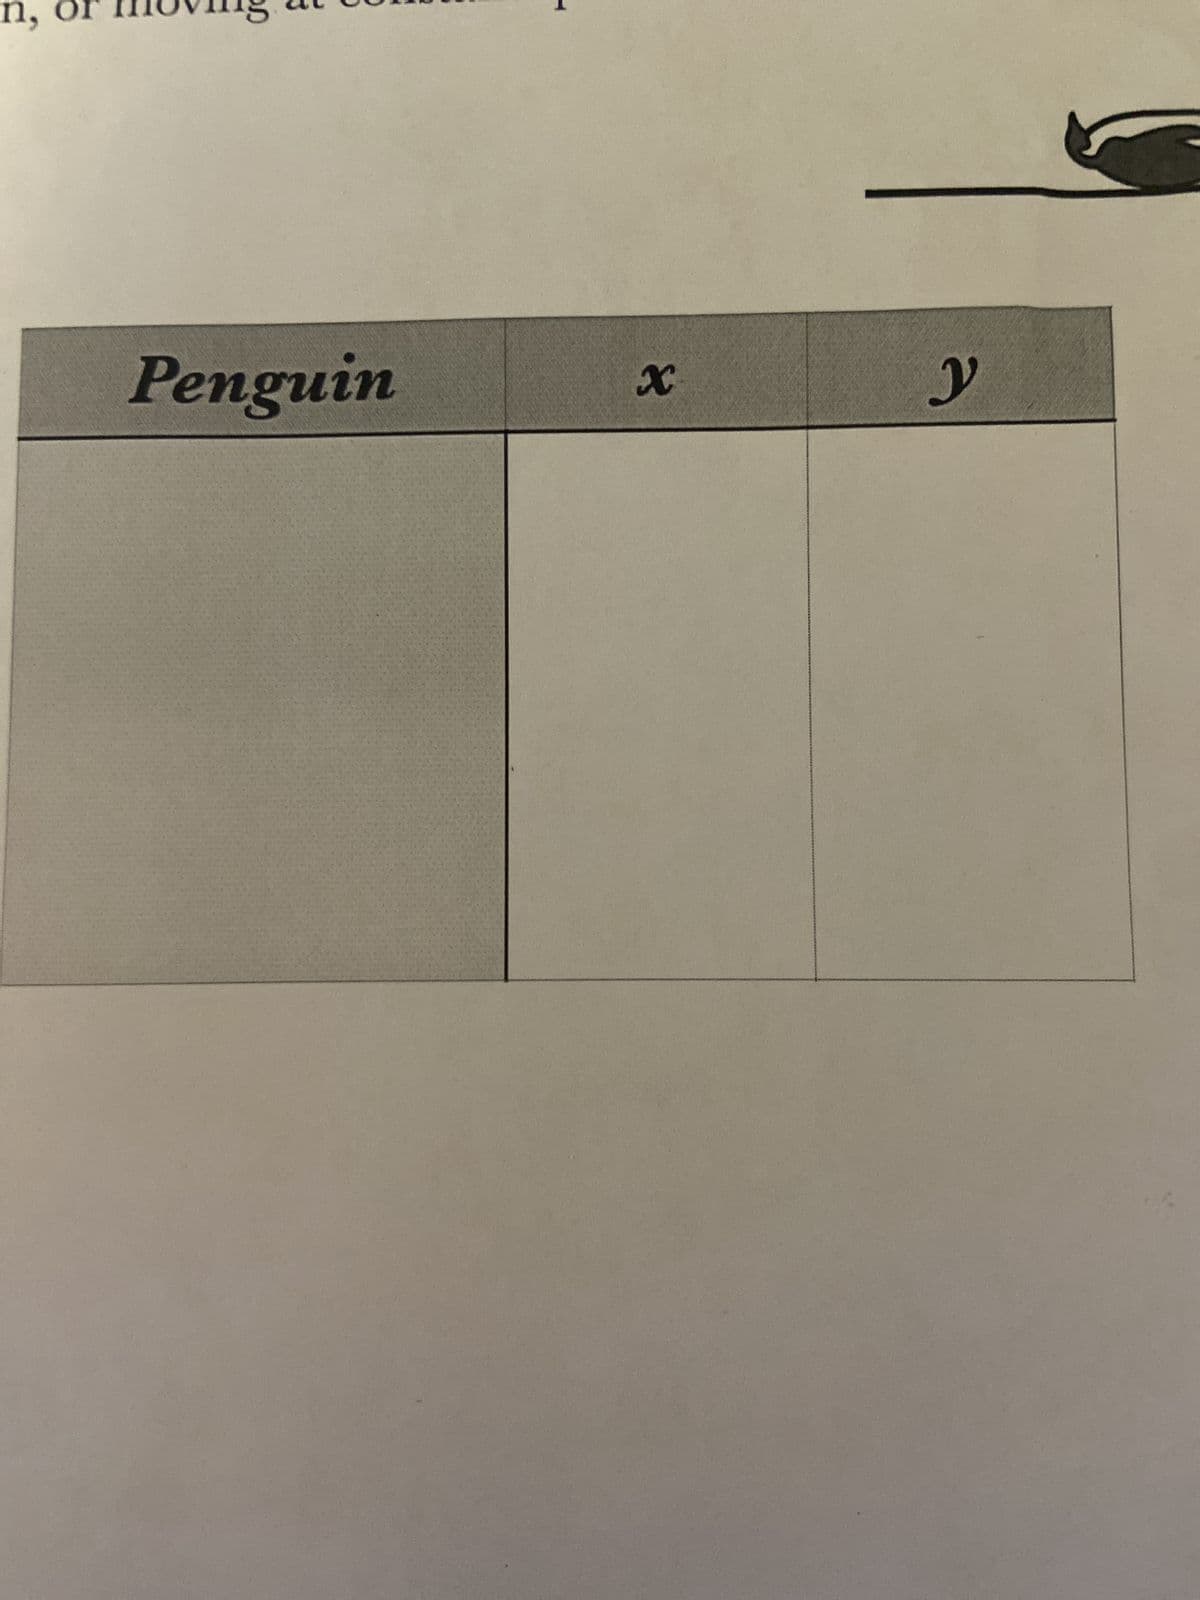 n,
D
Penguin
X
y